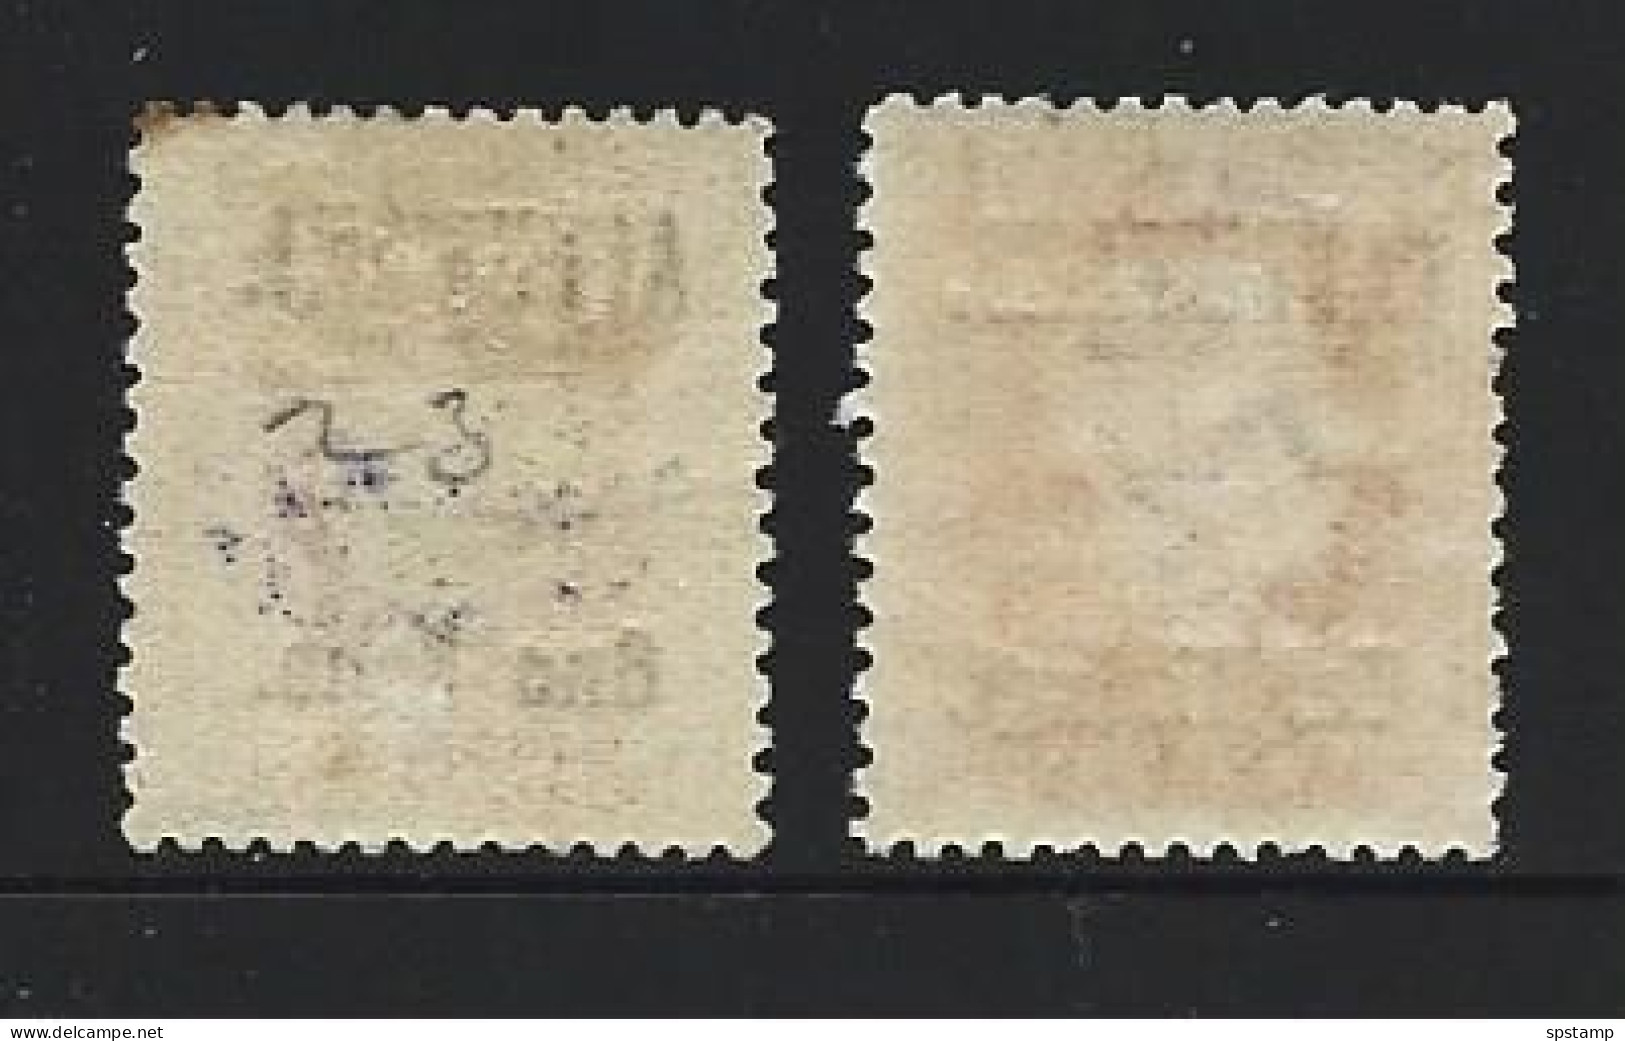 Aitutaki 1916 - 1917 Overprints On NZ KGV Perf 14 X 13.5 Set Of 2 Mint / MNH - Aitutaki